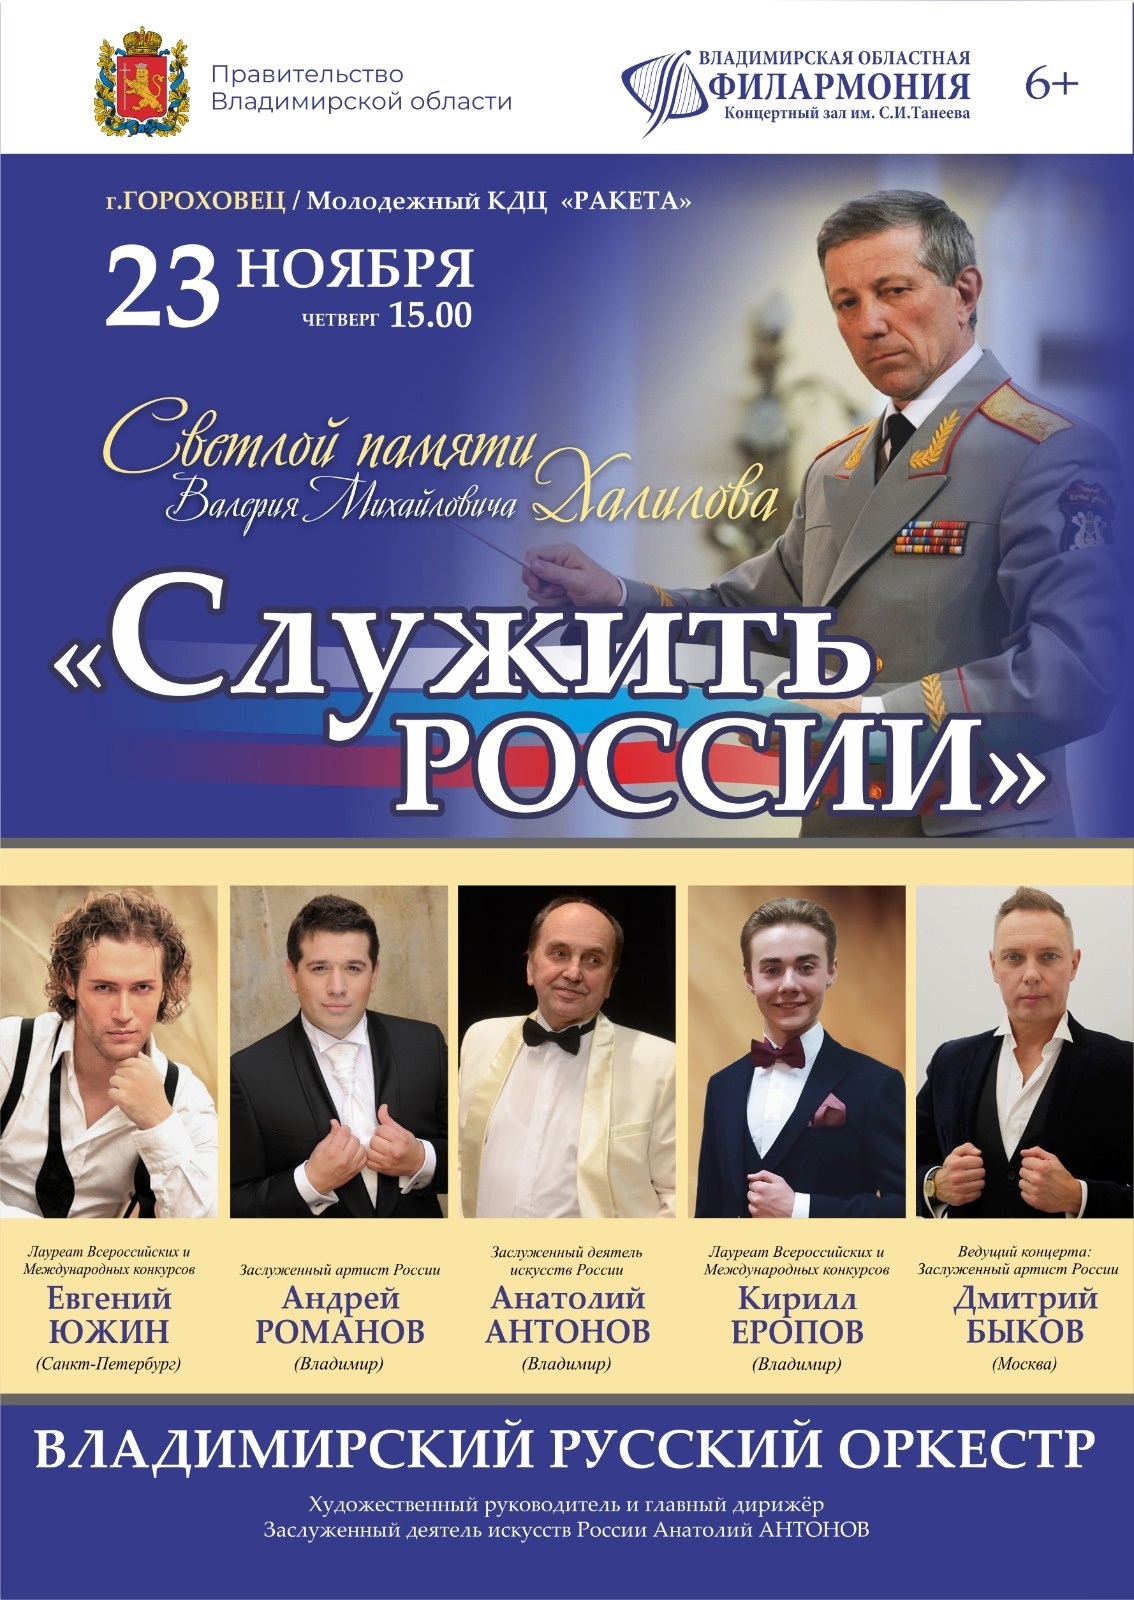 Владимирская областная филармония🎼🎶 в ноябре проведет серию концертов фестиваля «Служить России»